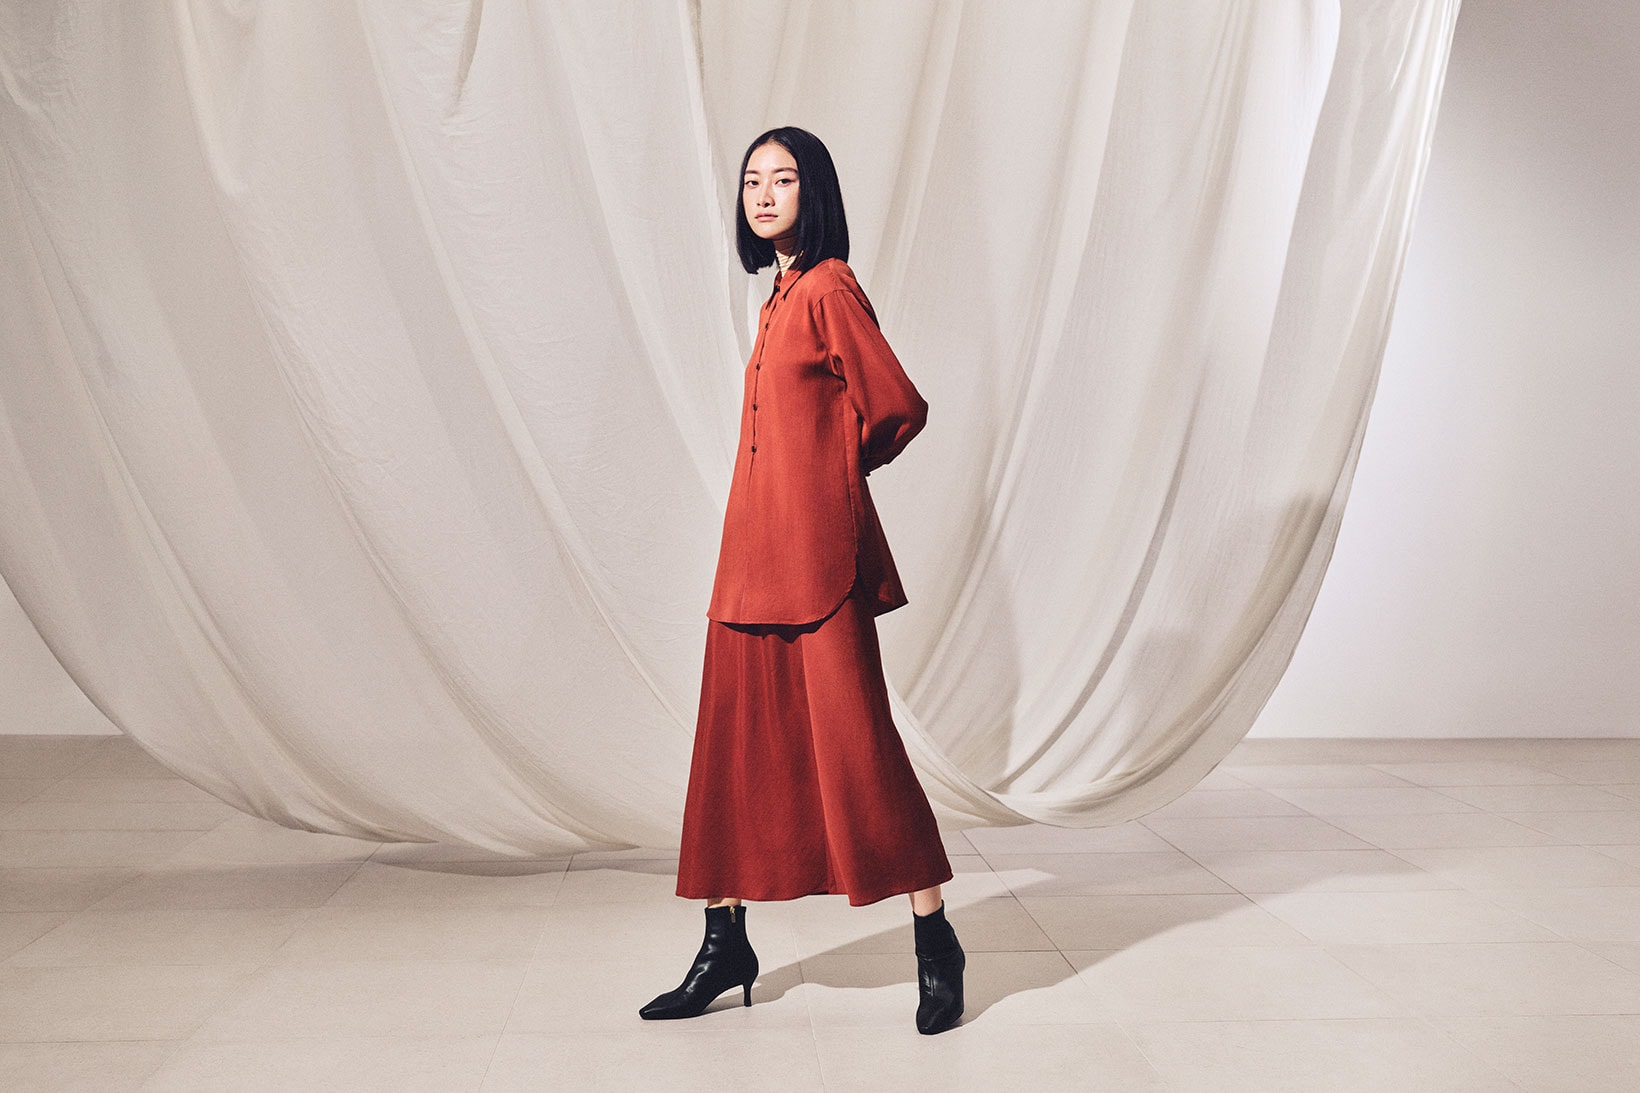 UNIQLO Hana Tajima Collaboration Shirt Skirt